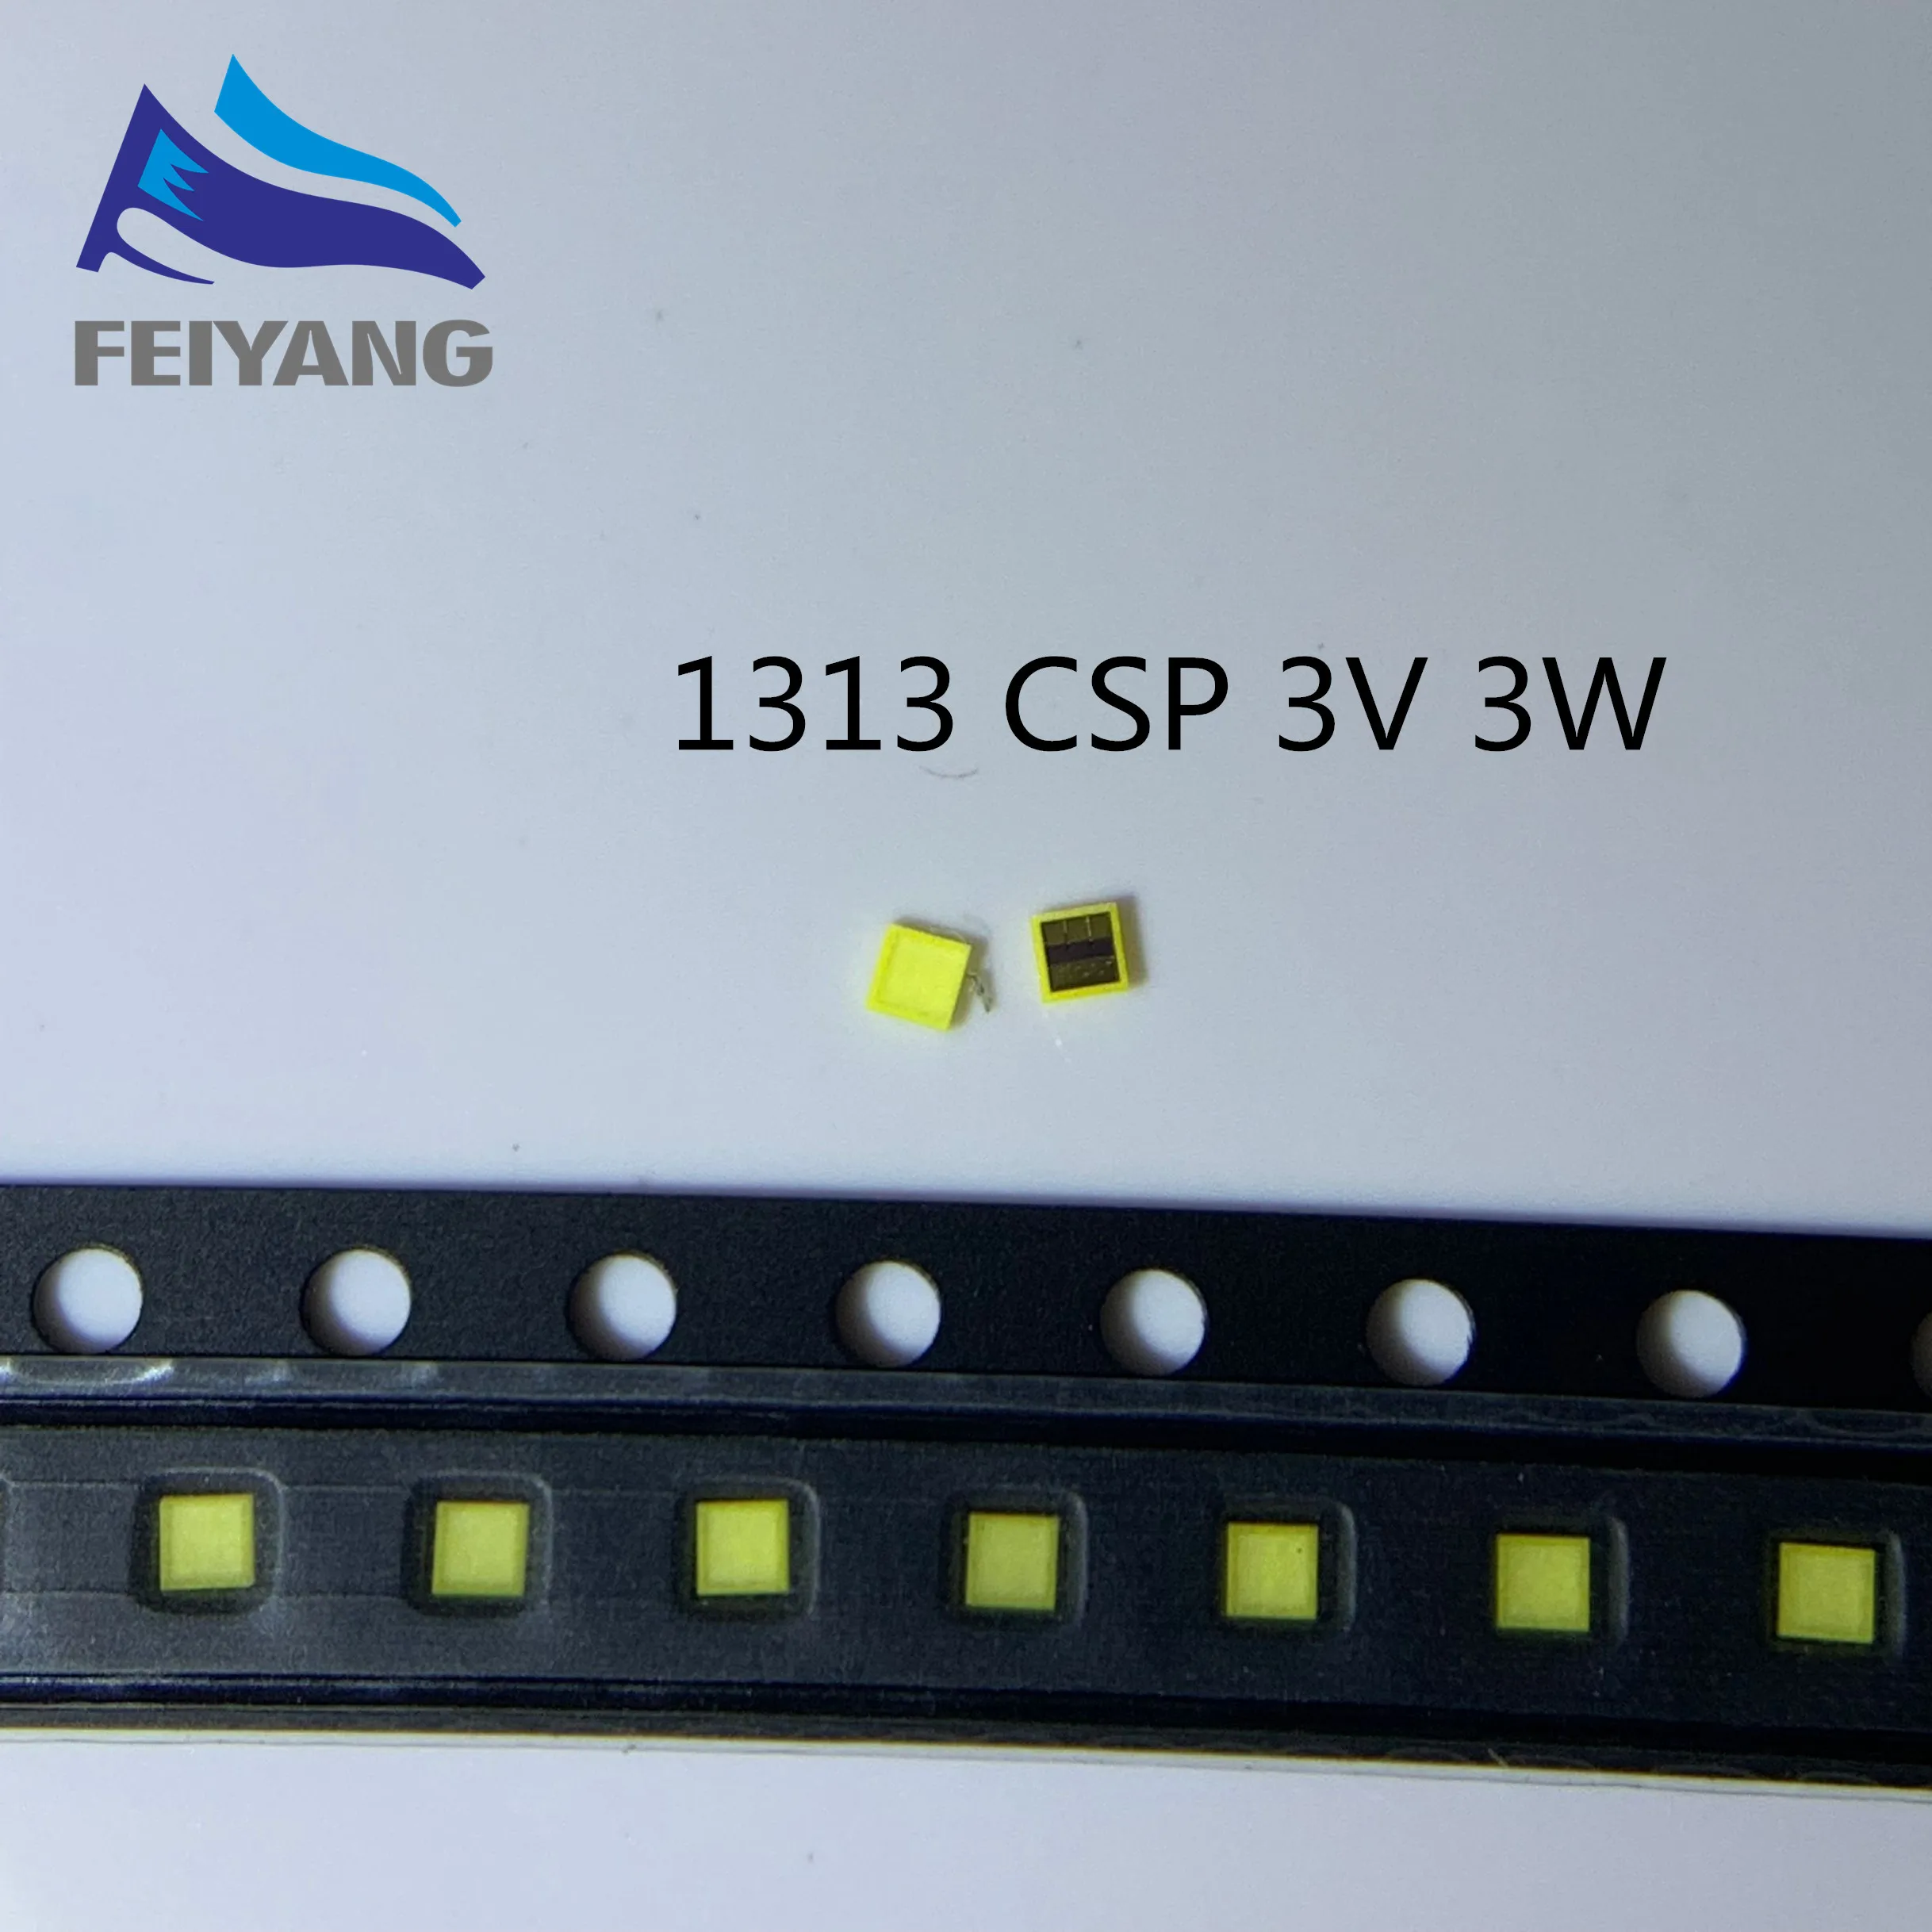 50 шт. для SAMSUNG светодиодный ЖК-подсветка ТВ Приложение светодиодный подсветка 3 Вт 3 в CSP 1313 холодный белый для ТВ приложения